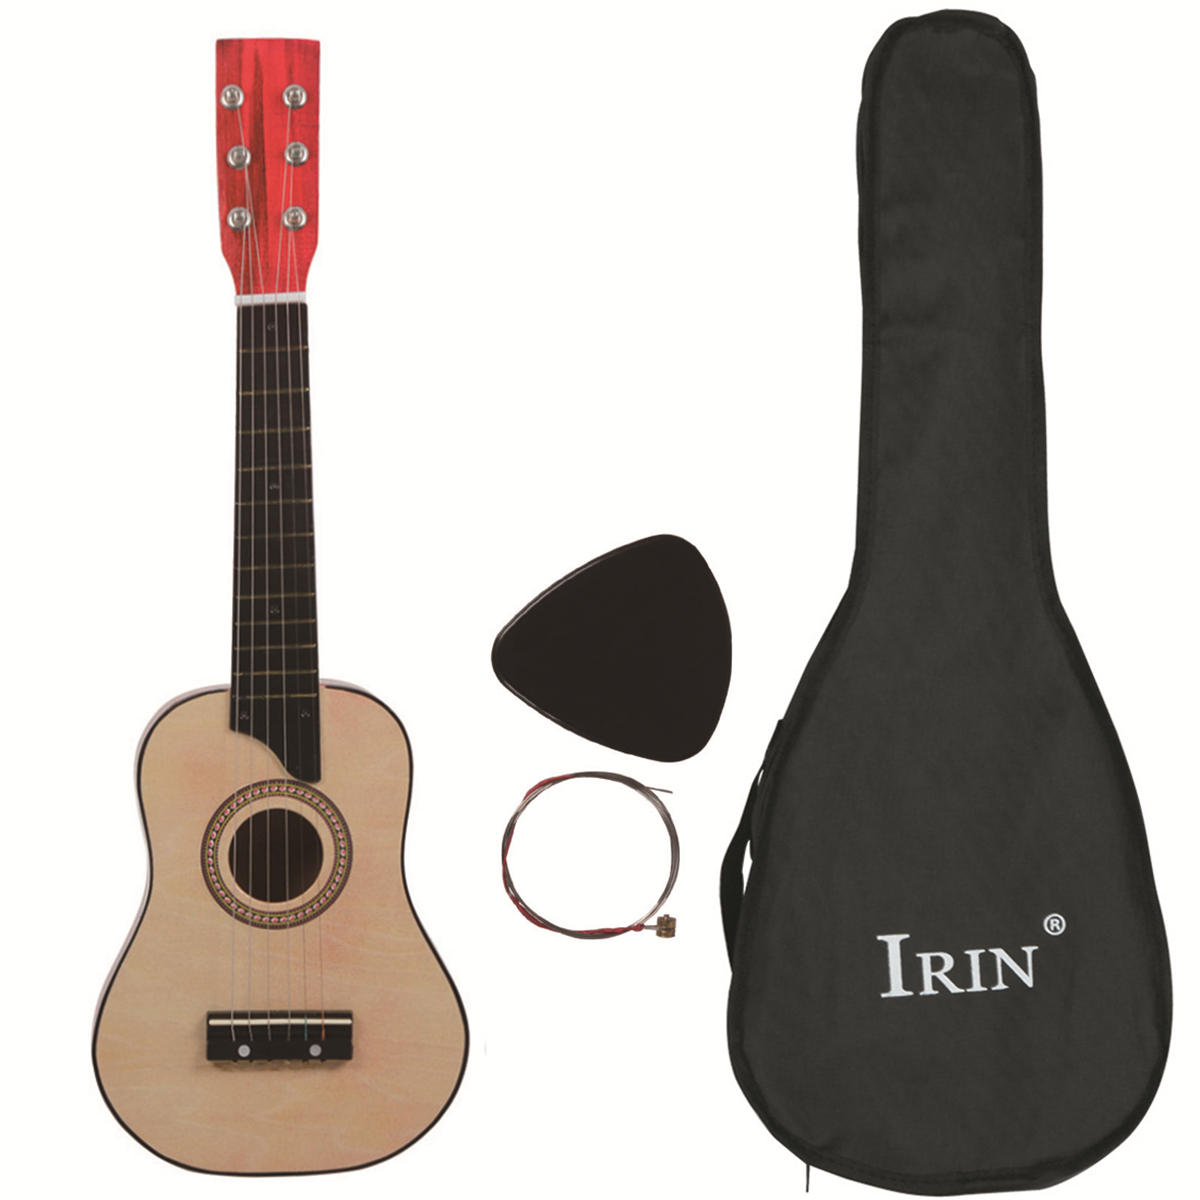 IRIN 25 Inch Basswood-gitaar met String / Pick / Bag voor muziekliefhebbers voor kinderen